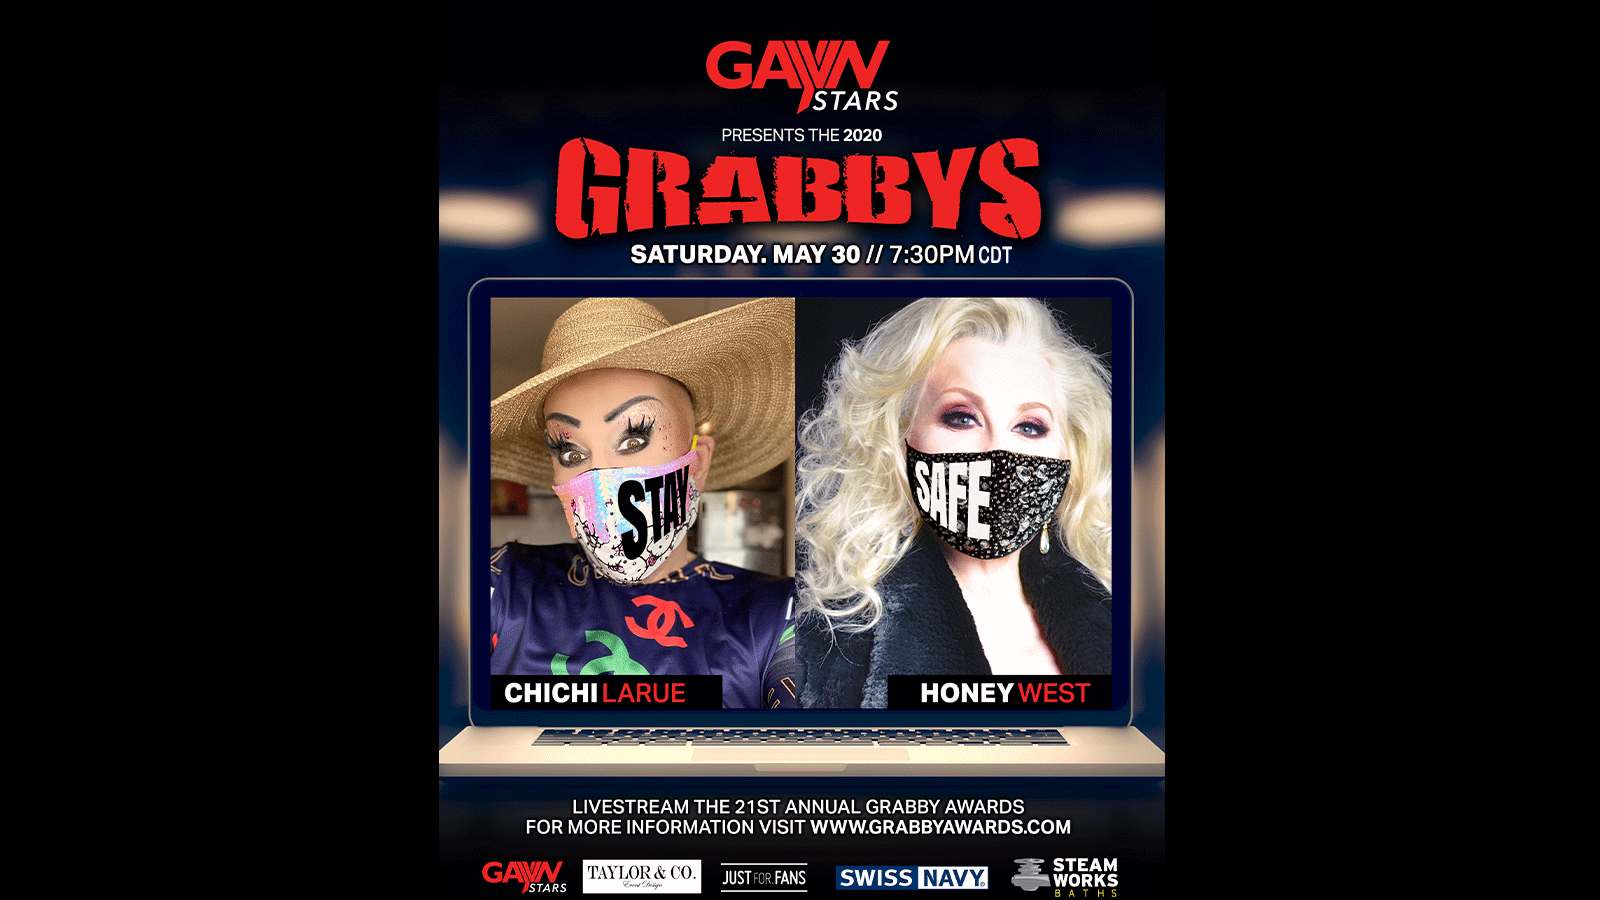 Grabbys Invites Nominees to Join Live Stream on GayVN Stars